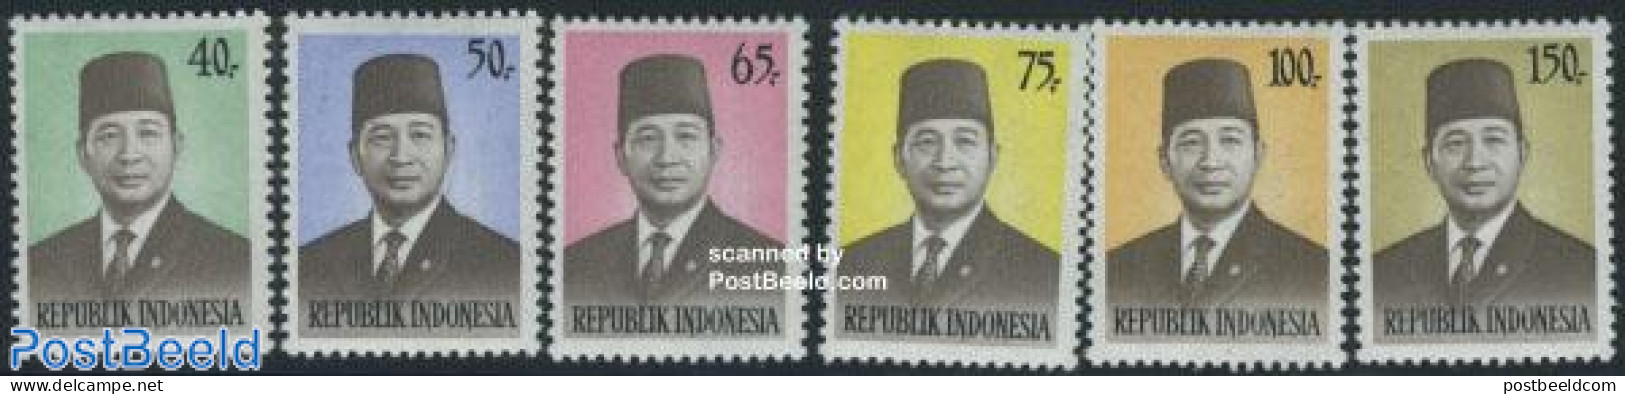 Indonesia 1974 Definitives 6v, Mint NH - Indonesië